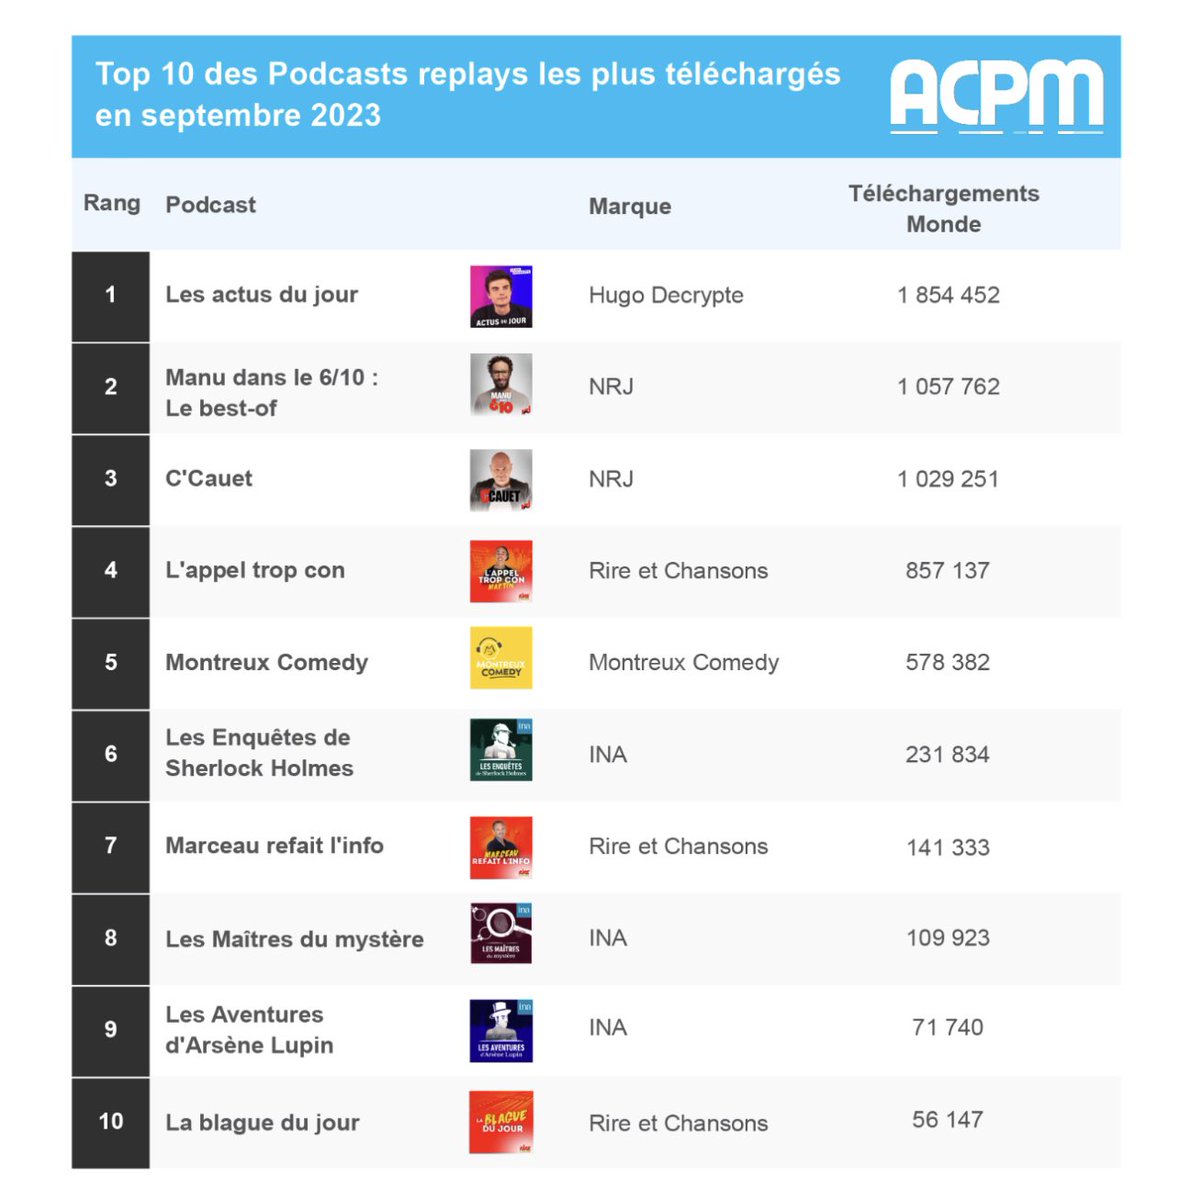 En septembre, 3 podcasts dans le top 4 du classement de référence @ACPMFrance sont des replays des émissions de NRJ et Rire et Chansons. Plus d’un million de lectures pour les replays de @manulevyoff et @cauetofficiel